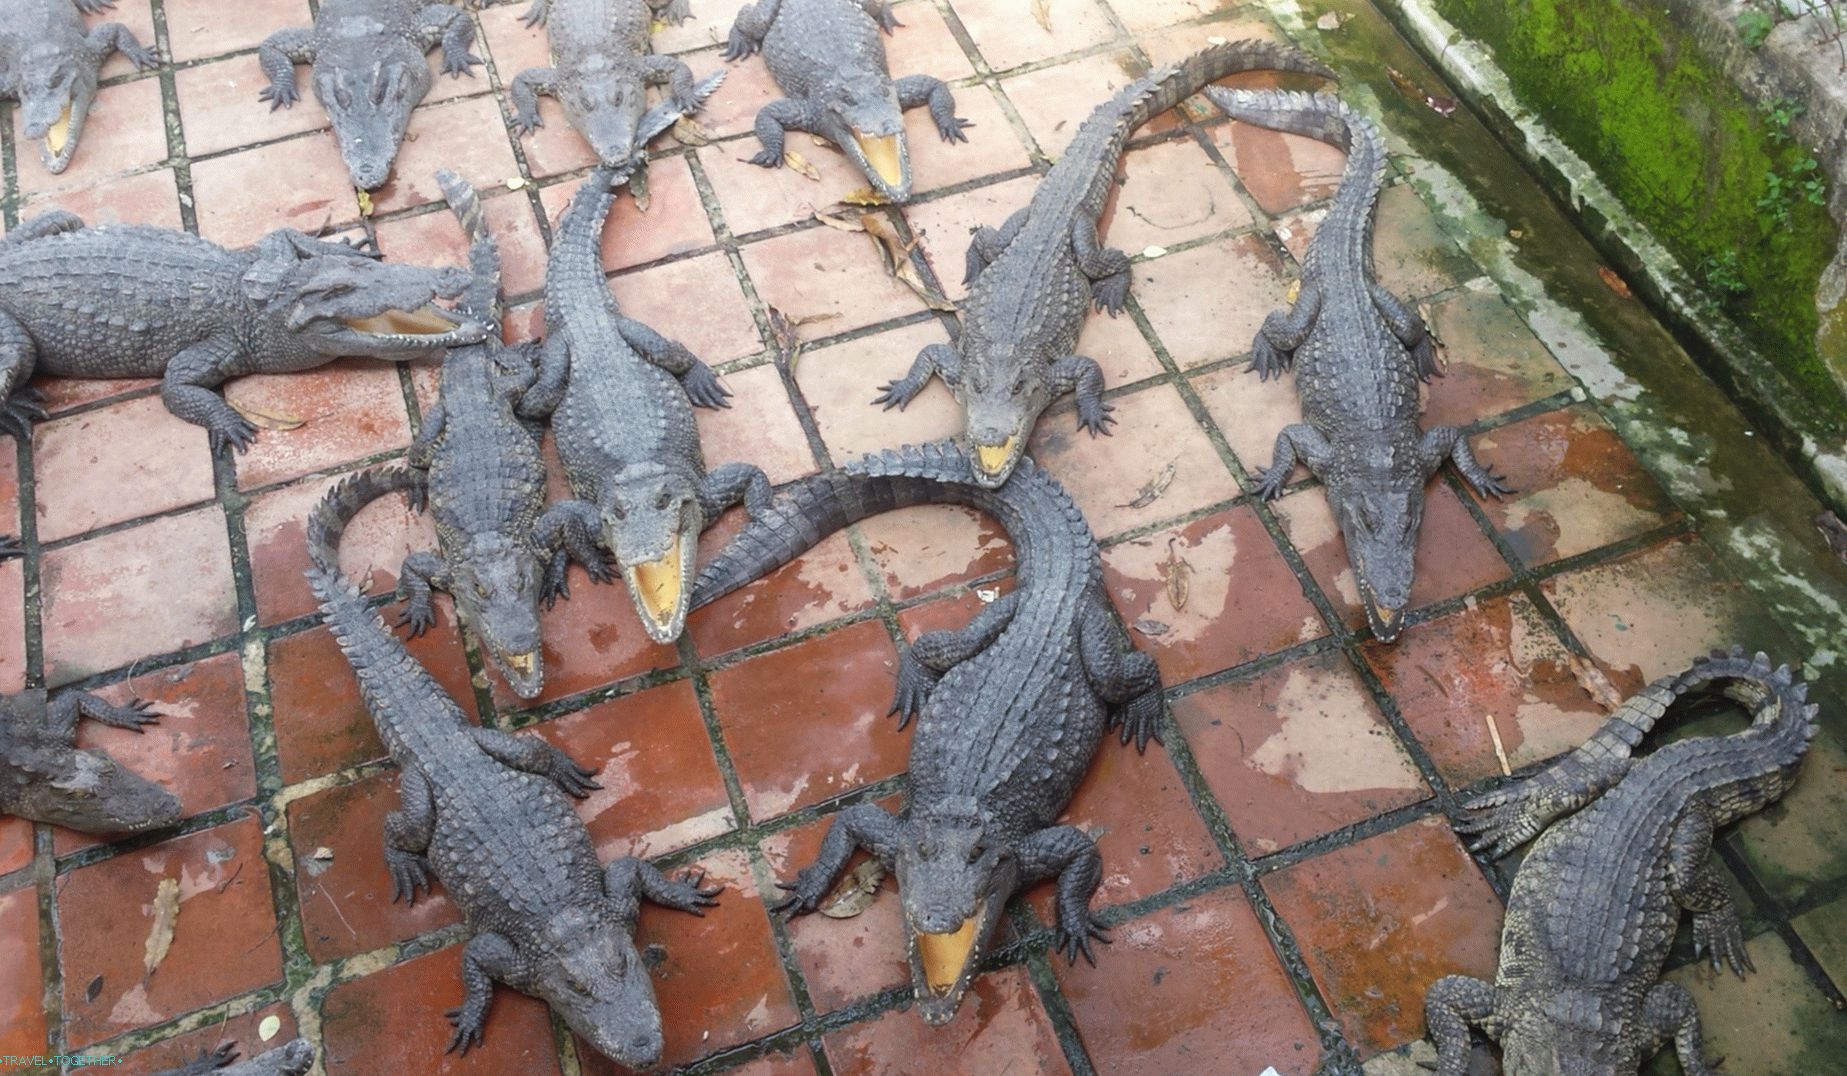 Crocodiles in Vietnam